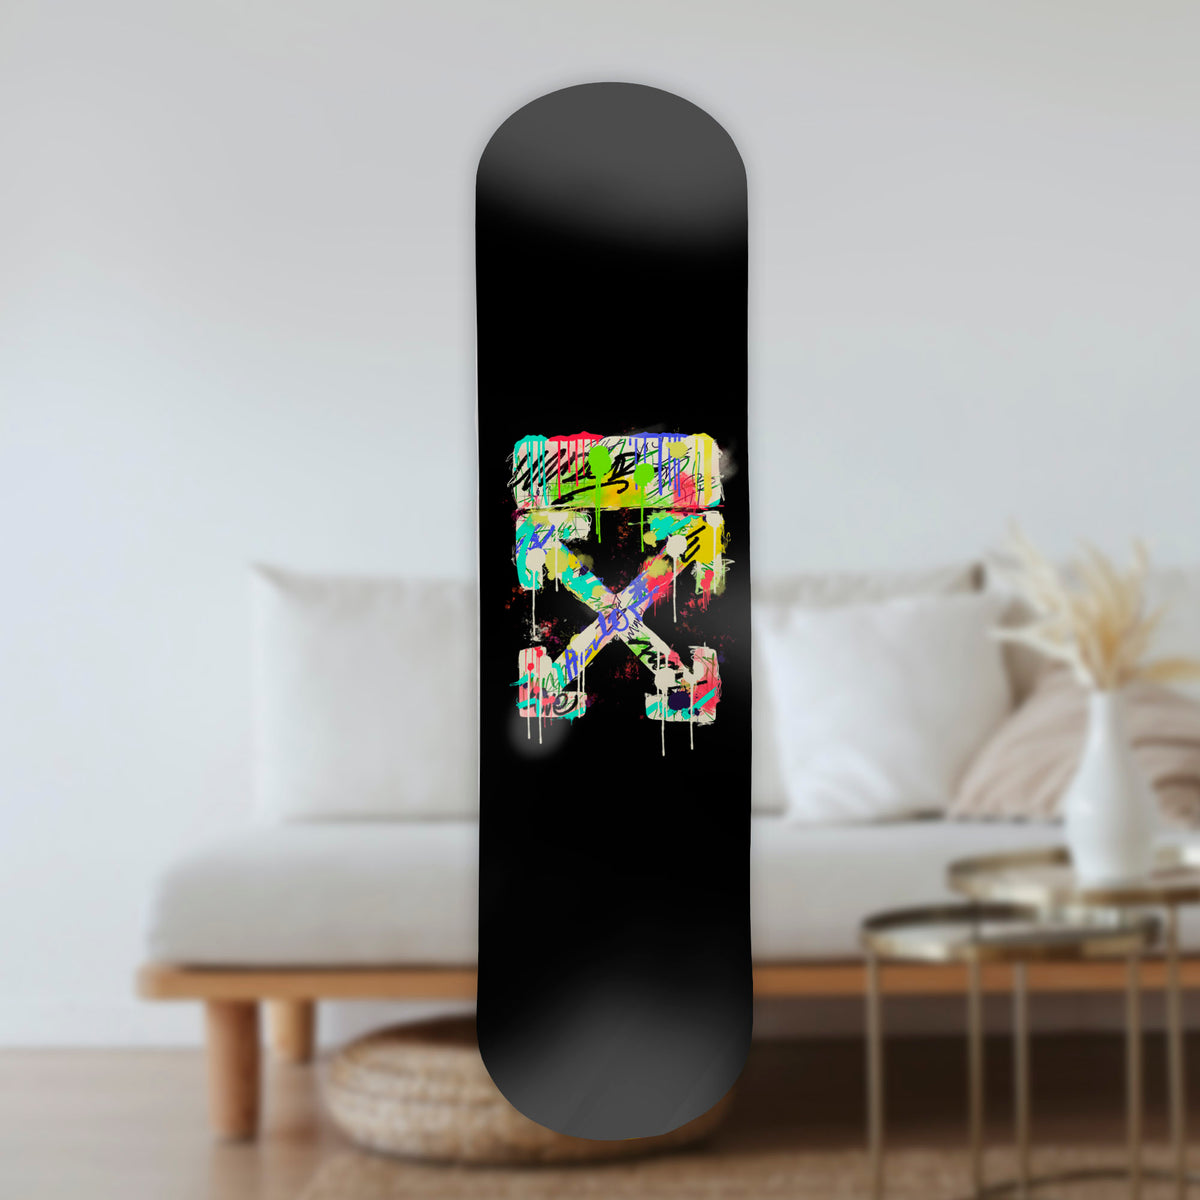 Wall Art of Arrows Skateboard Design in Acrylic Glass - Geometric